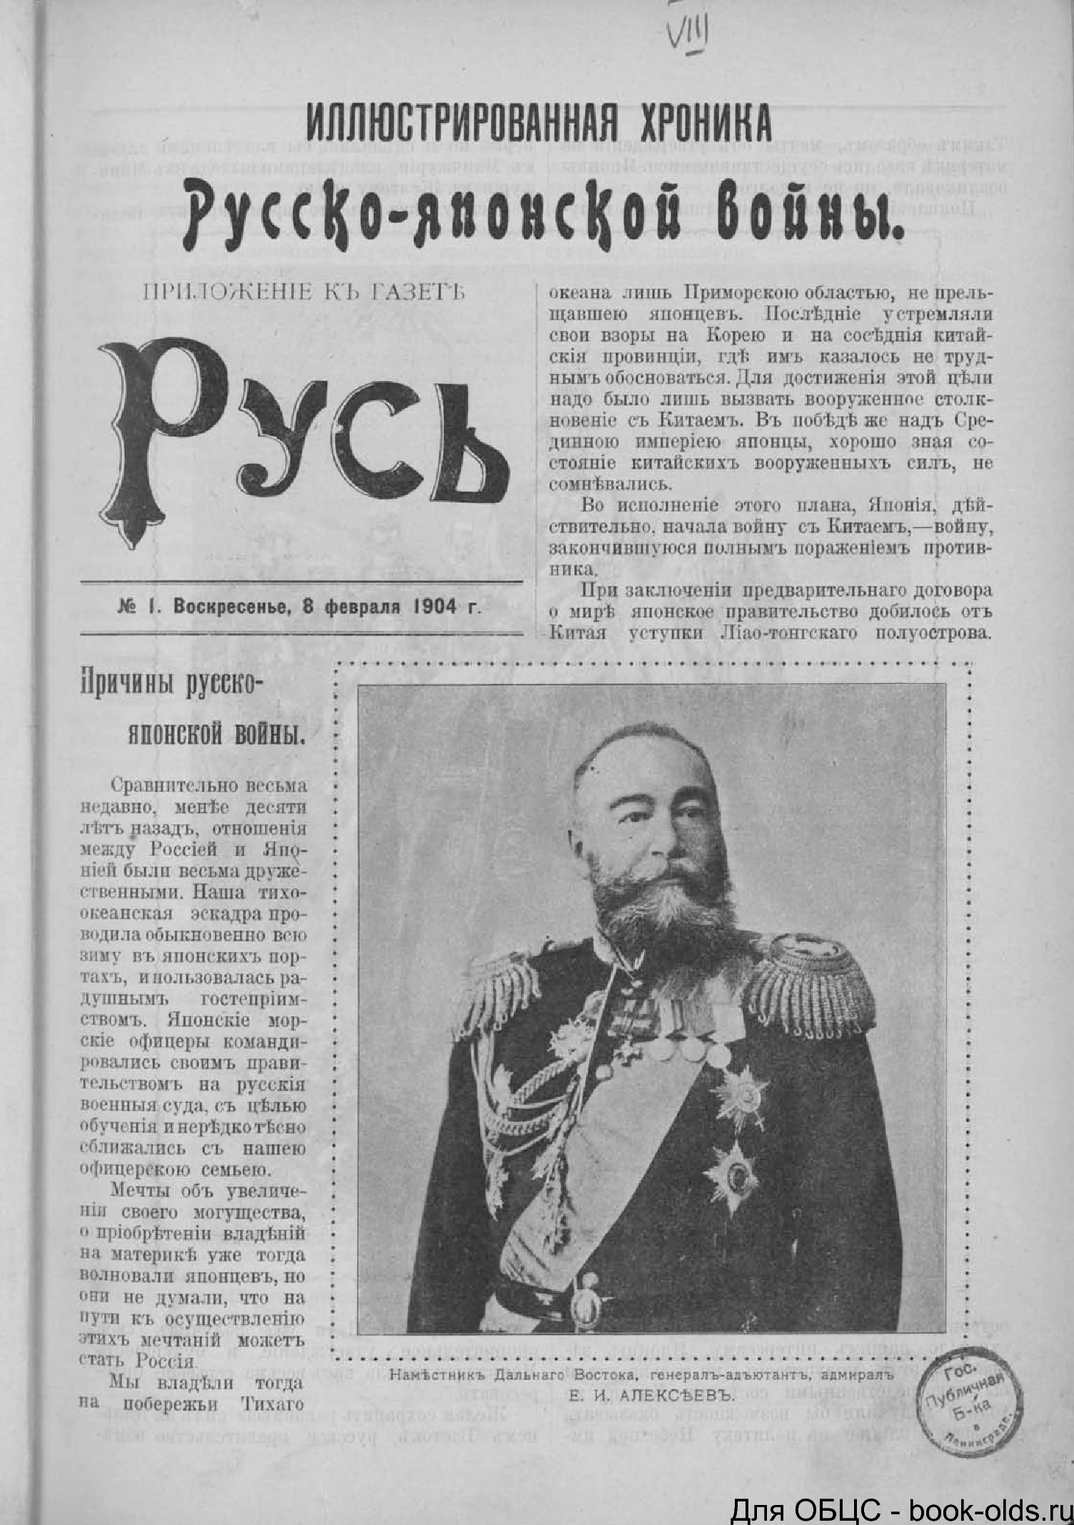 Русско-японская война: дата начала и продолжительность, причины и итоги - switki.ru